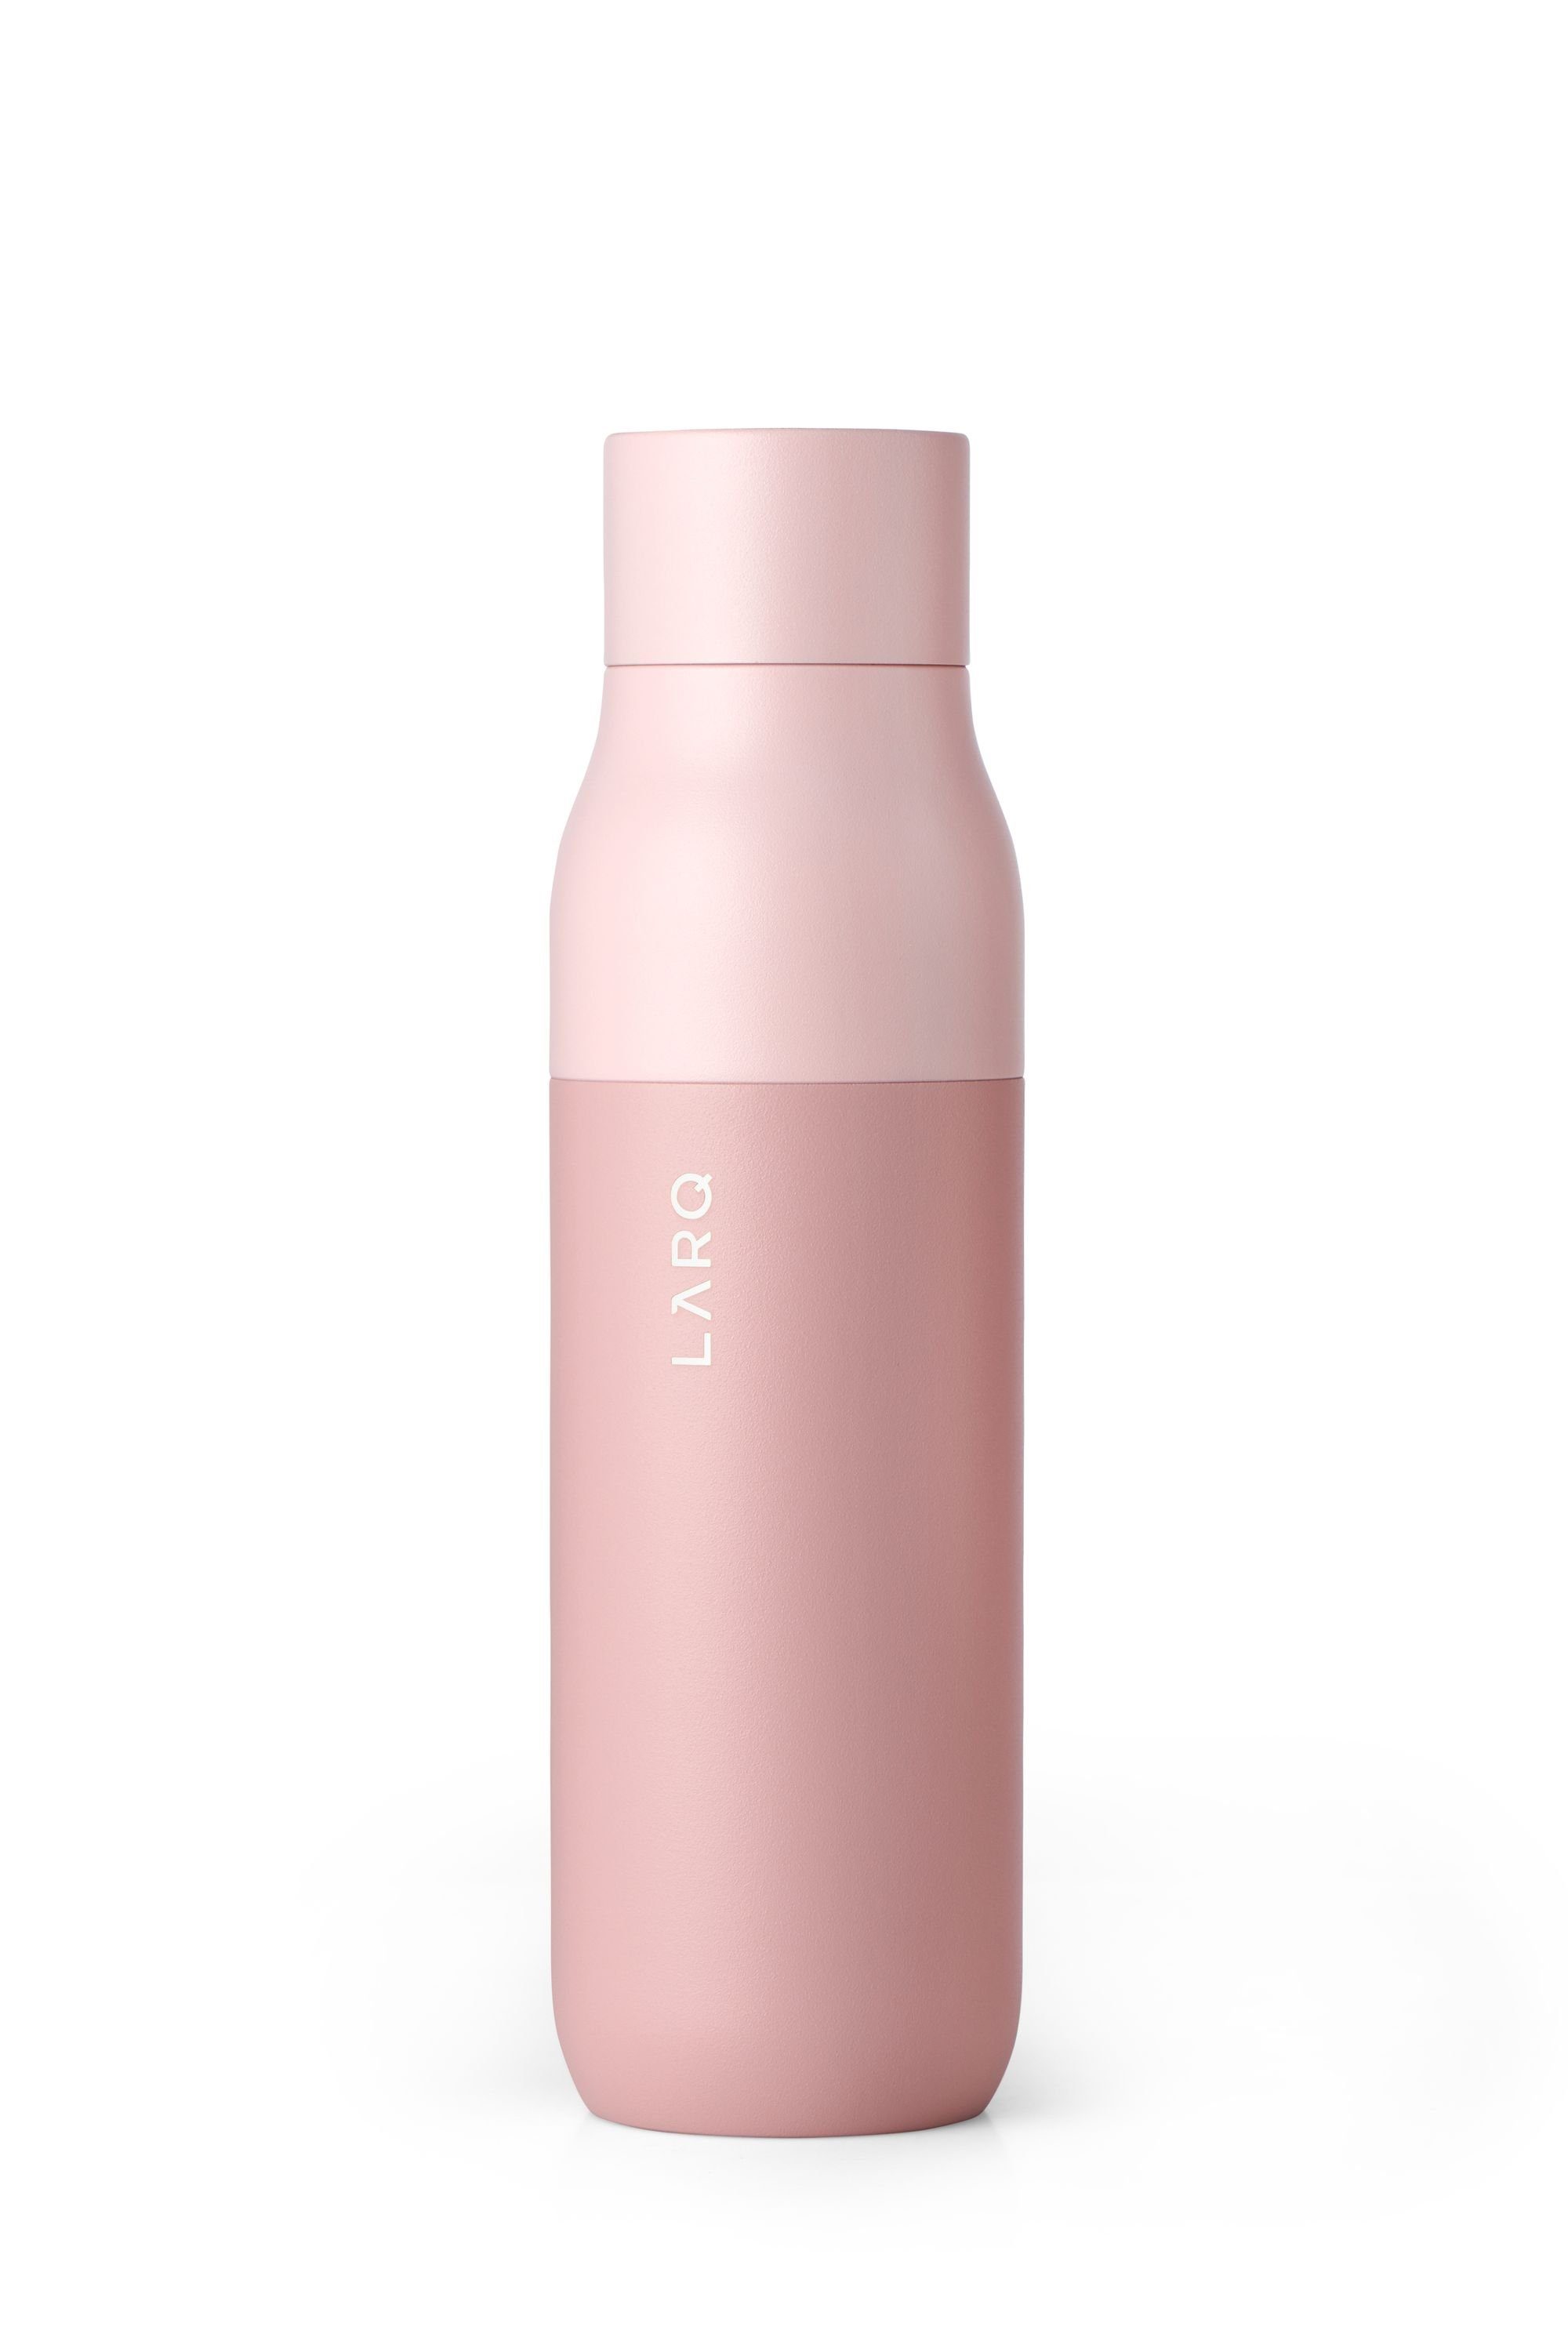 LARQ Trinkflasche »Bottle PureVis 500ml« kaufen | OTTO